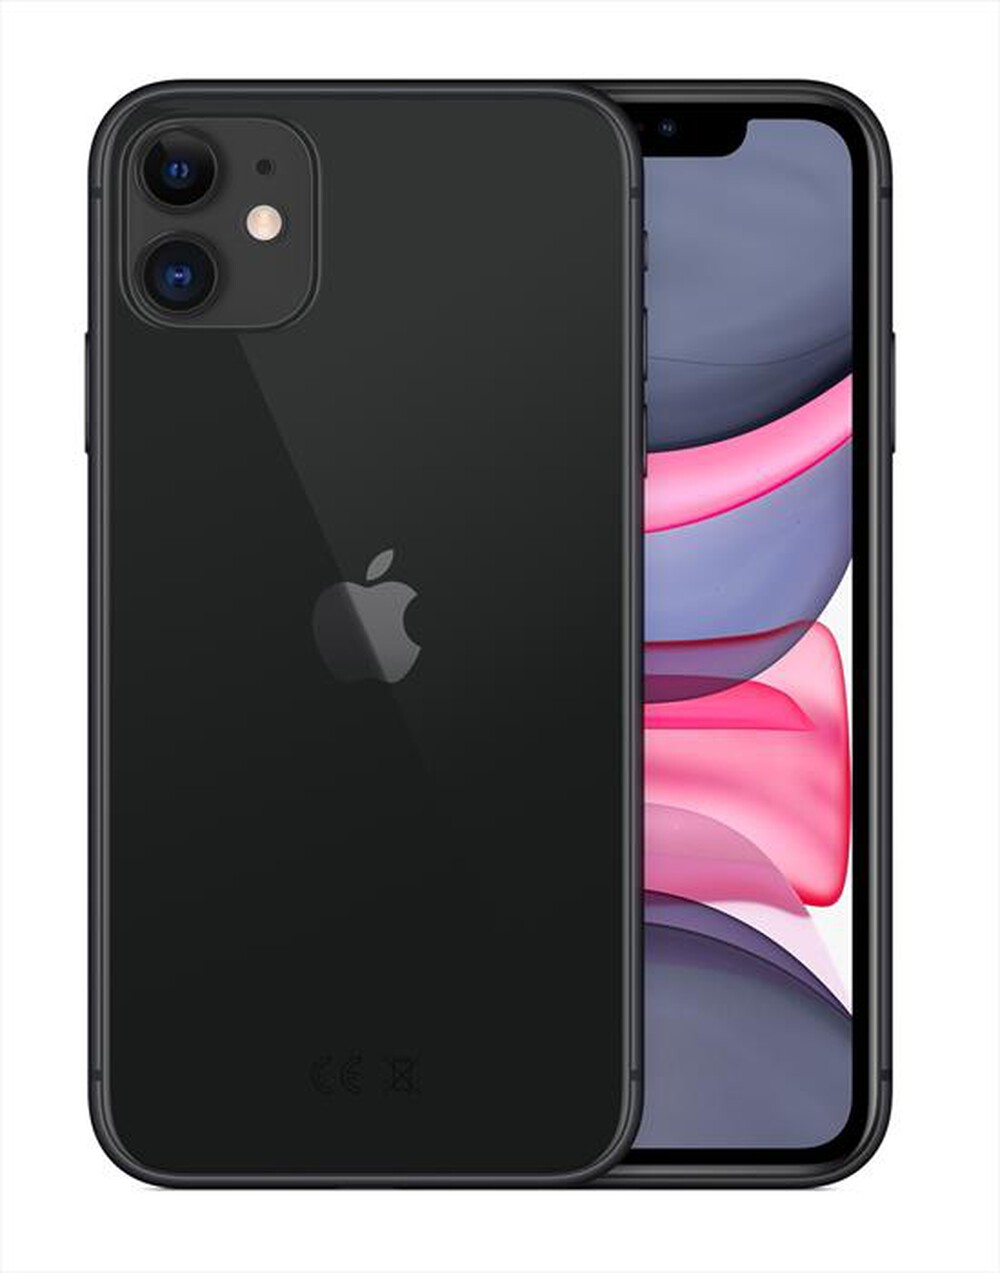 "APPLE - iPhone 11 64GB (Senza accessori)-Nero"